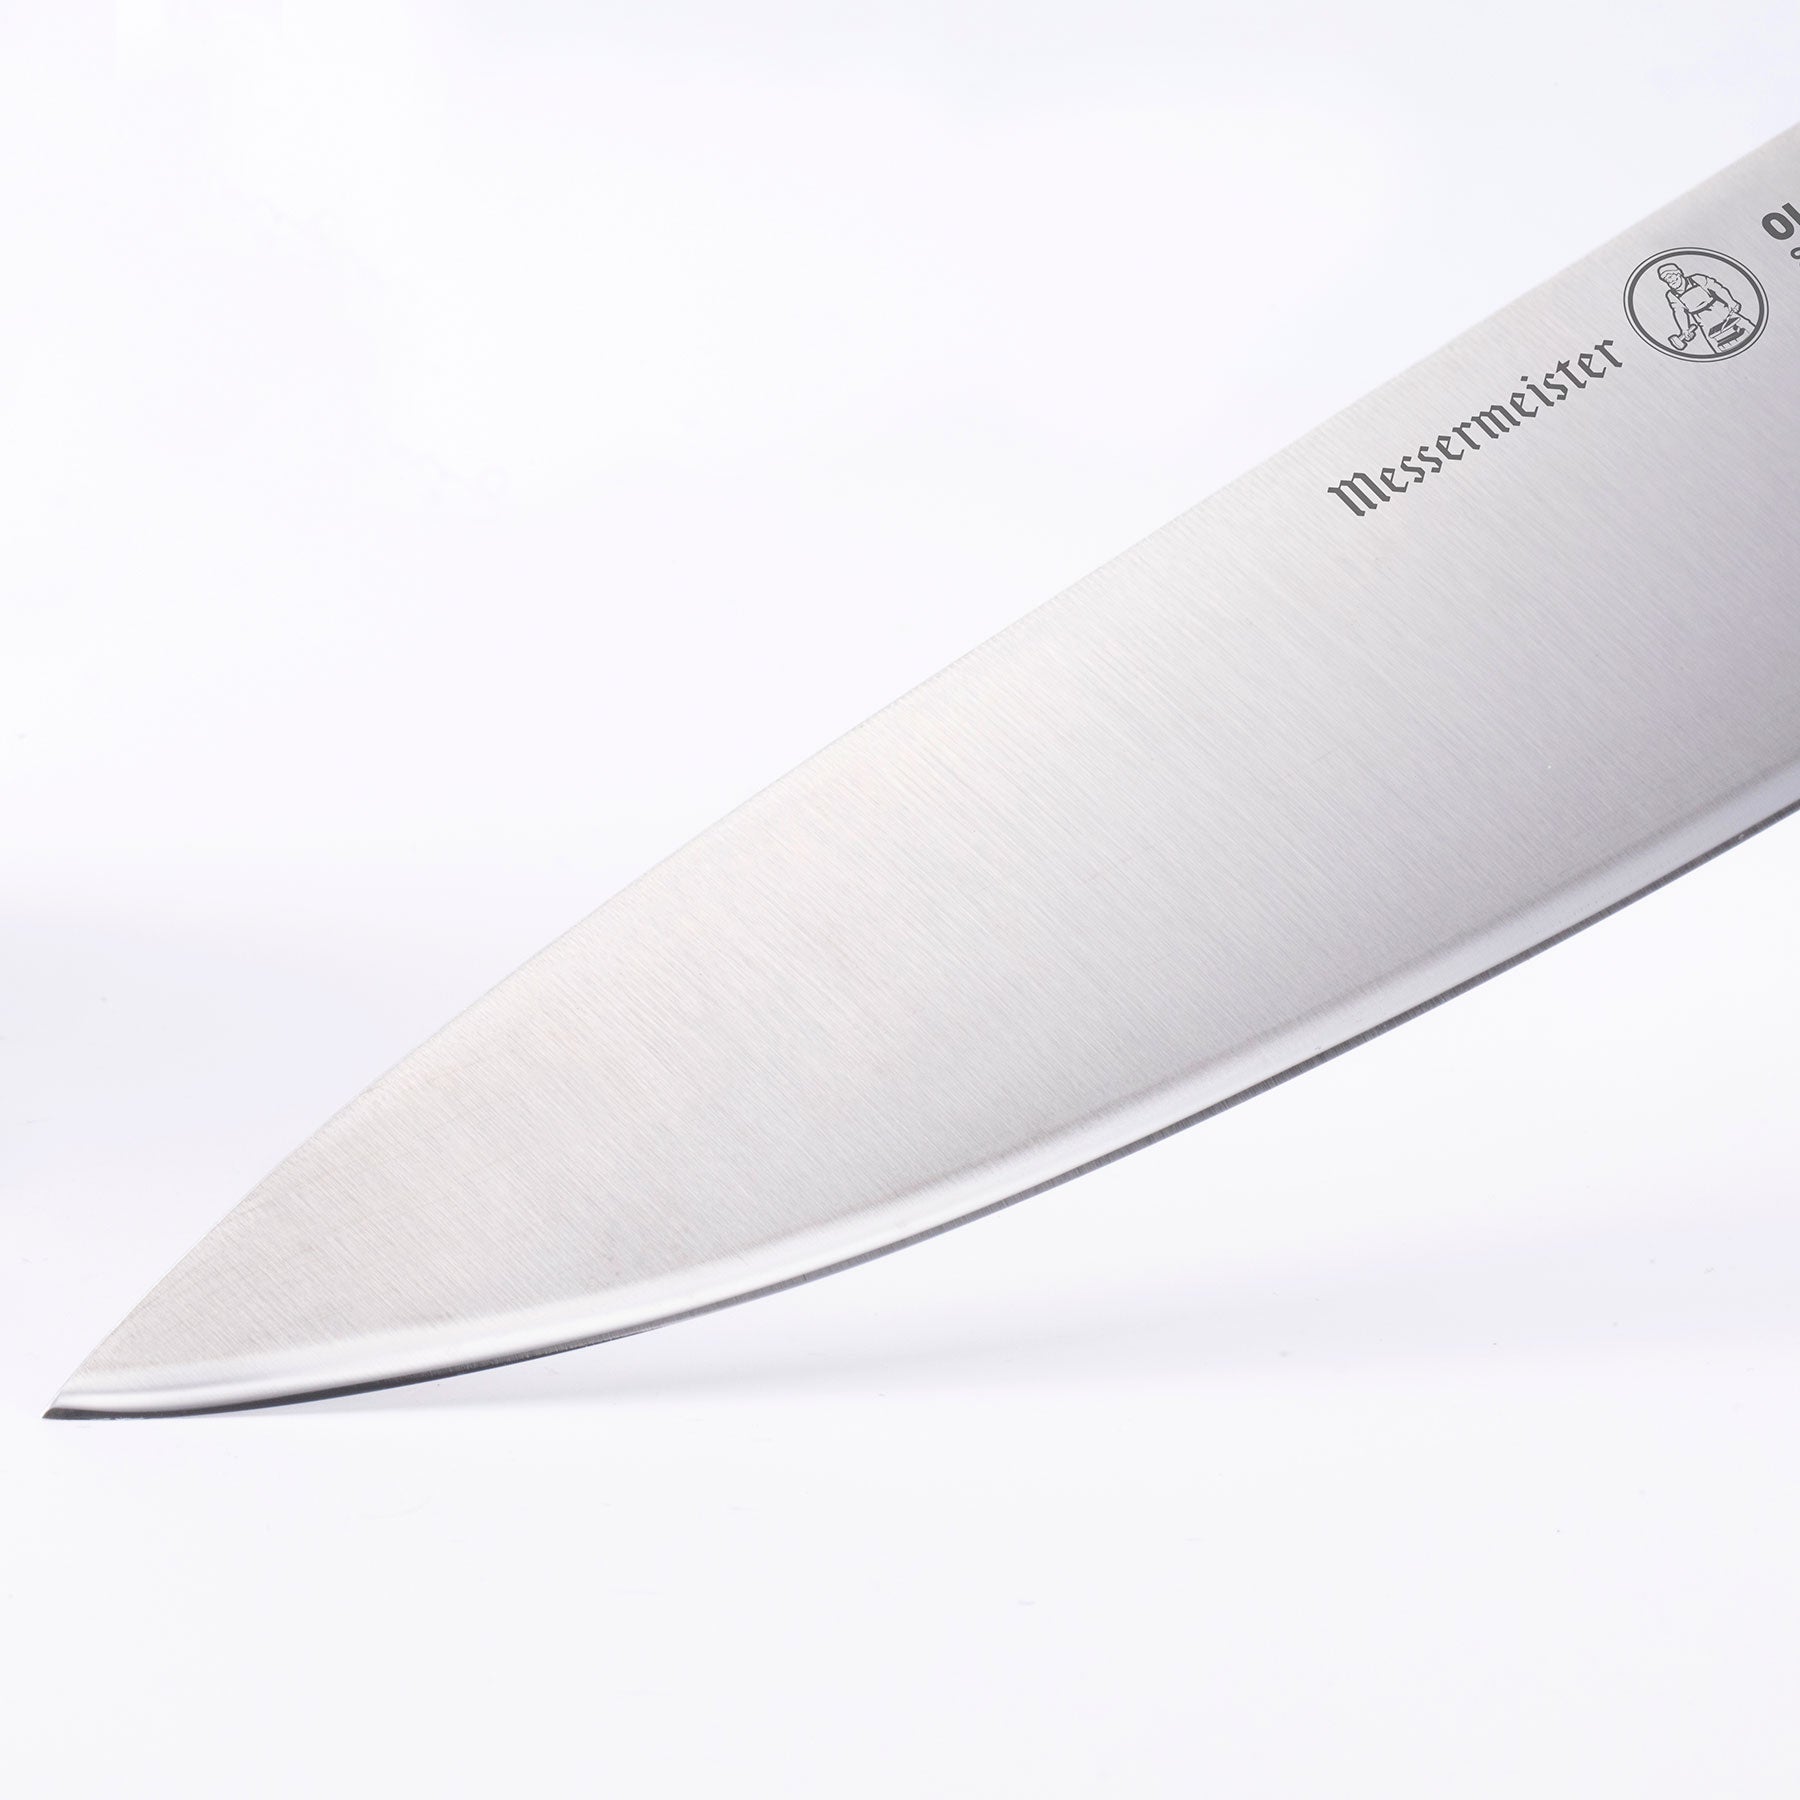 Oliva Elite 9 Inch Chef's Knife